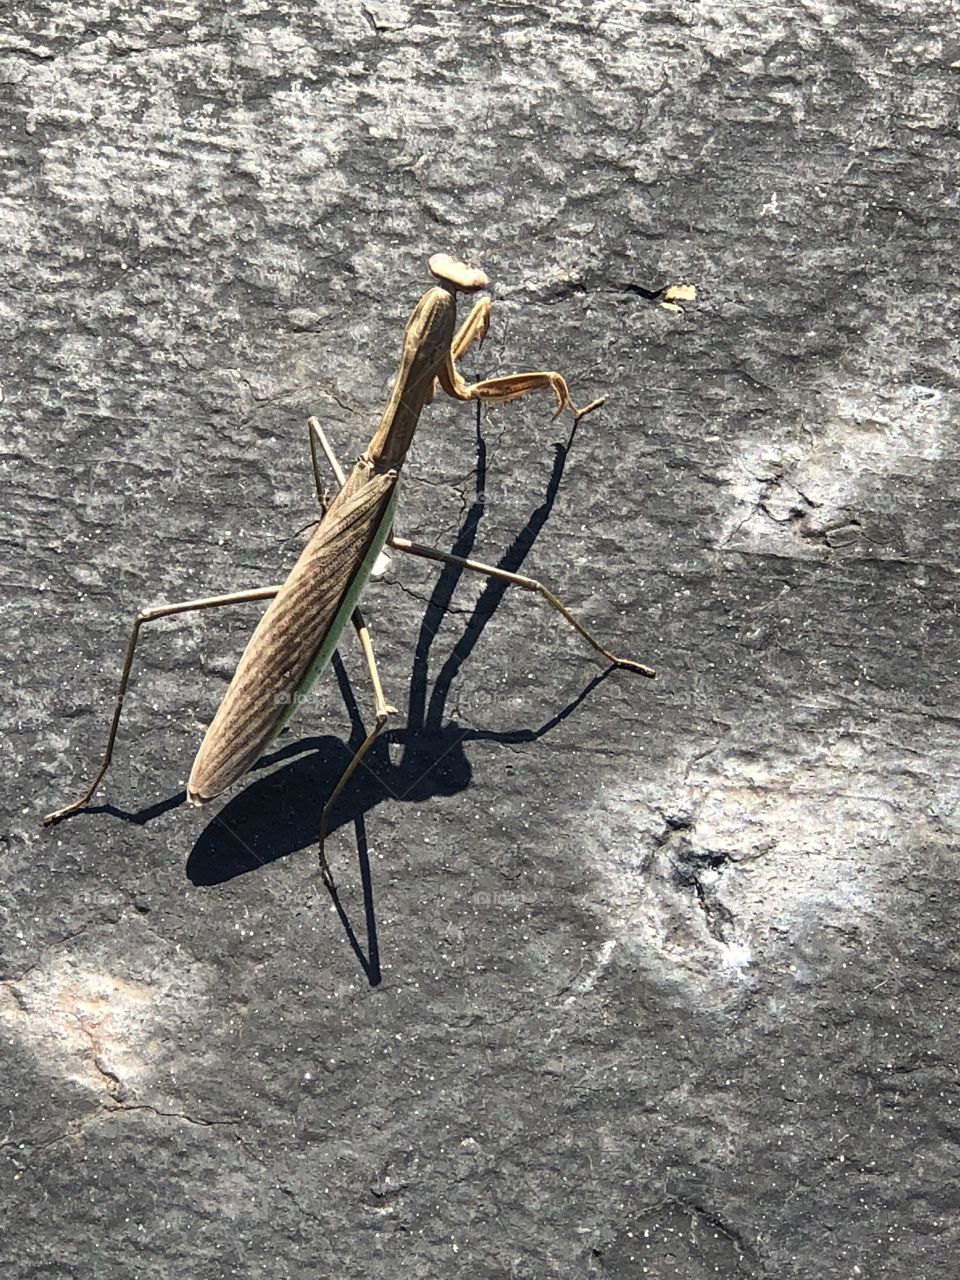 A large mantis 